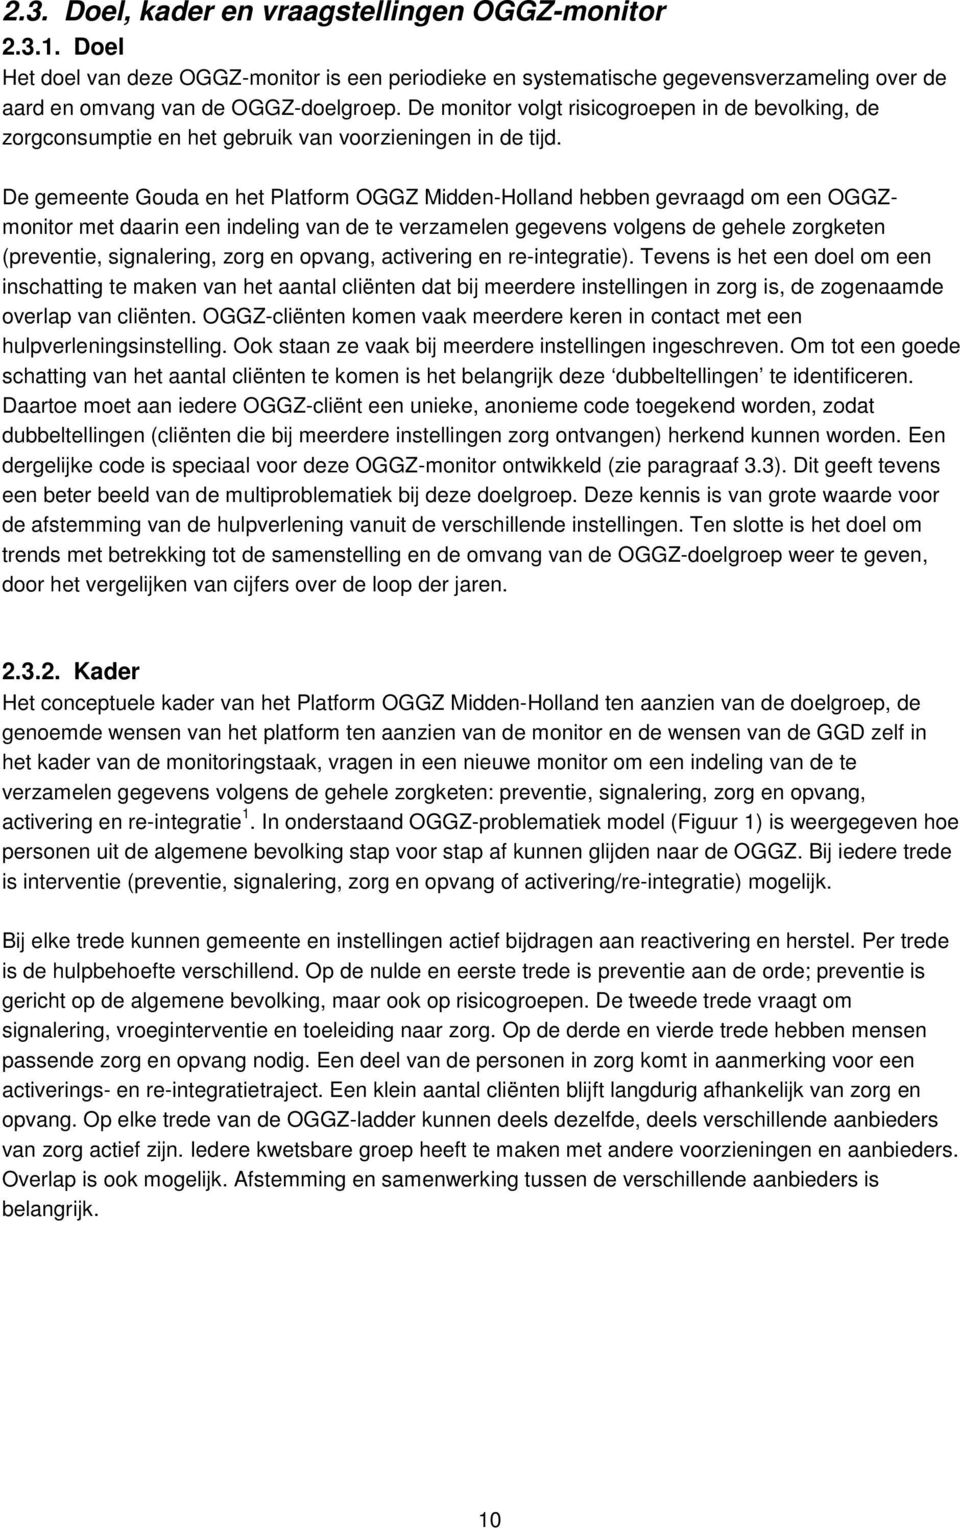 De gemeente Gouda en het Platform OGGZ Midden-Holland hebben gevraagd om een OGGZmonitor met daarin een indeling van de te verzamelen gegevens volgens de gehele zorgketen (preventie, signalering,